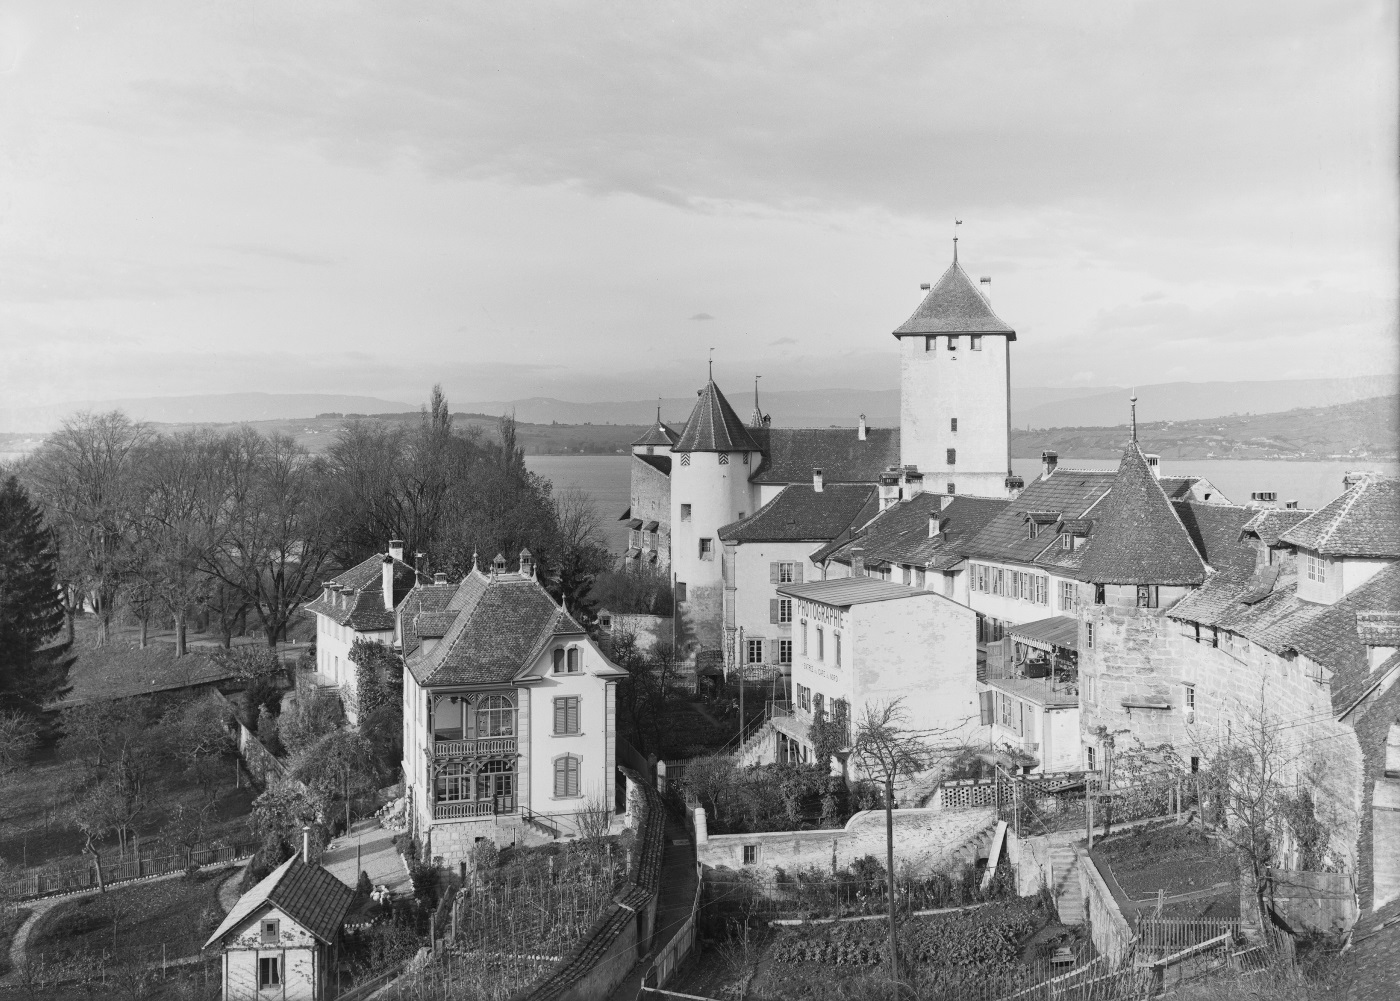 Le château de Morat, photographie de Gustav Wattelet, vers 1900